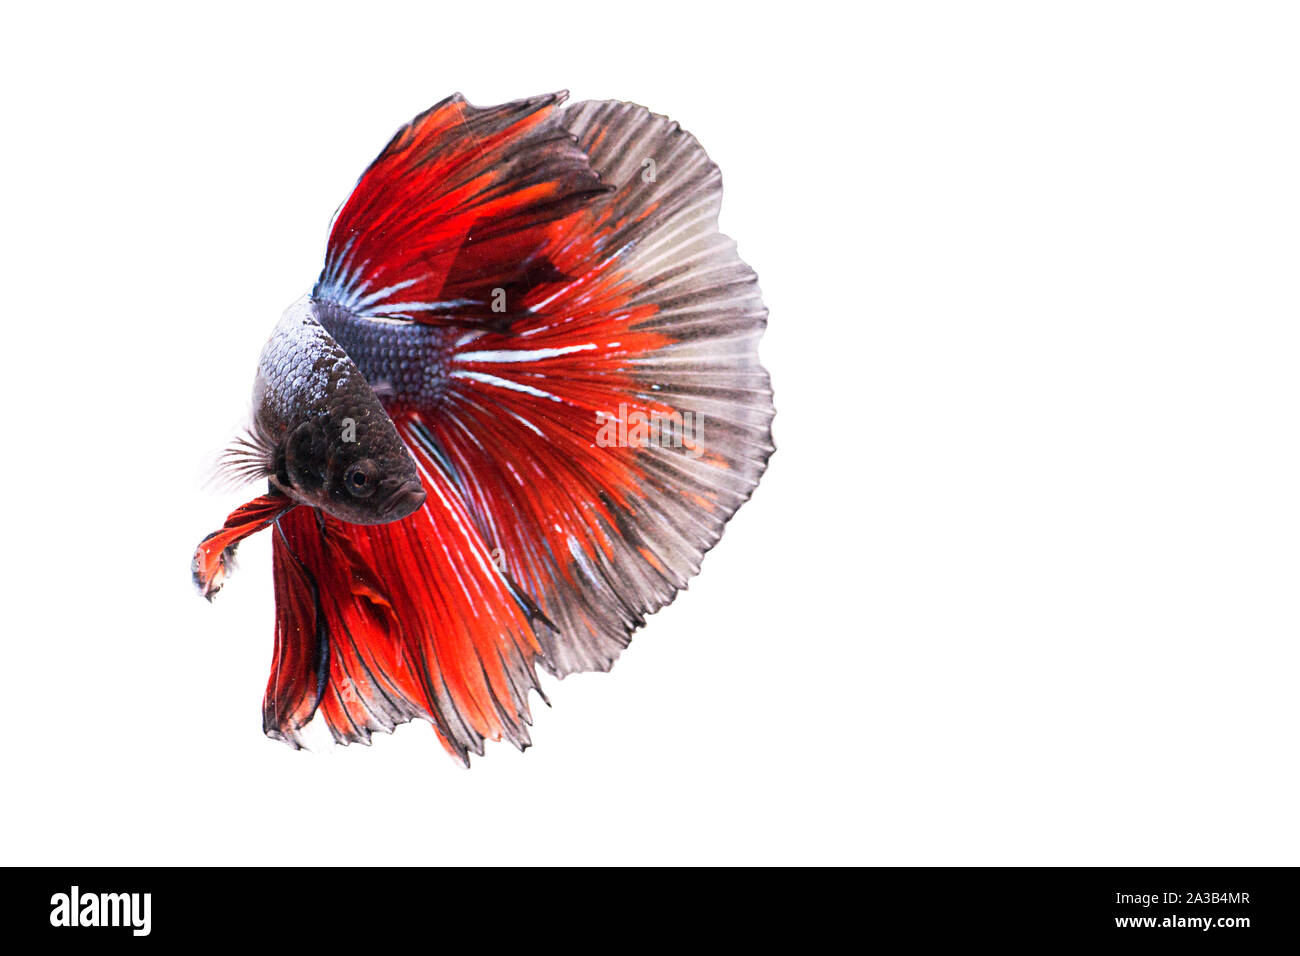 Poissons de combat siamois. Betta poisson dans beau mouvement avec couleur rouge sur fond blanc Banque D'Images